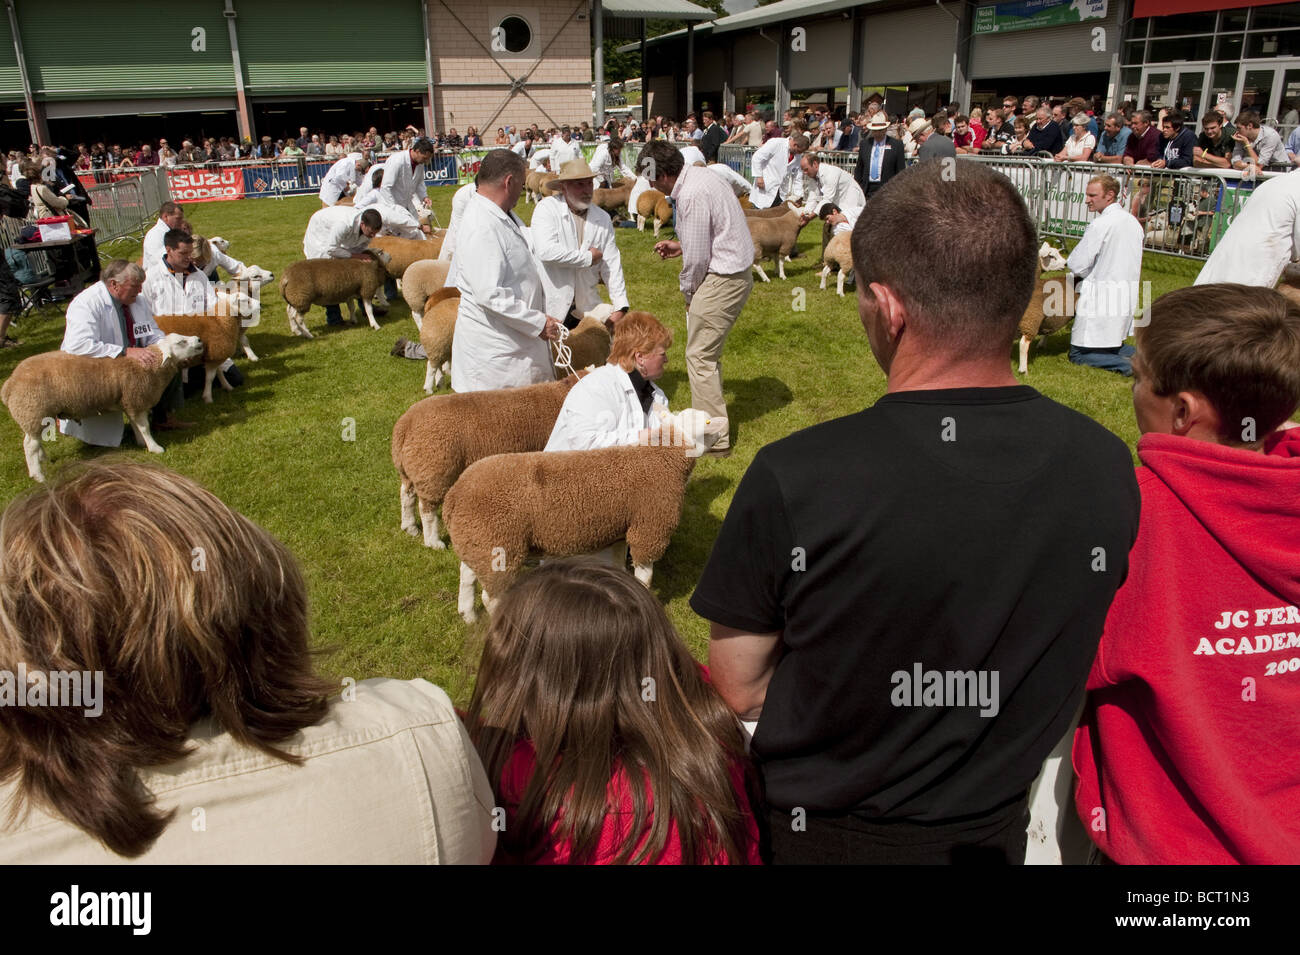 Foule de spectateurs regardant le jugement de bétail dans une piscine moutons anneau au Royal Welsh Show event agricole Banque D'Images